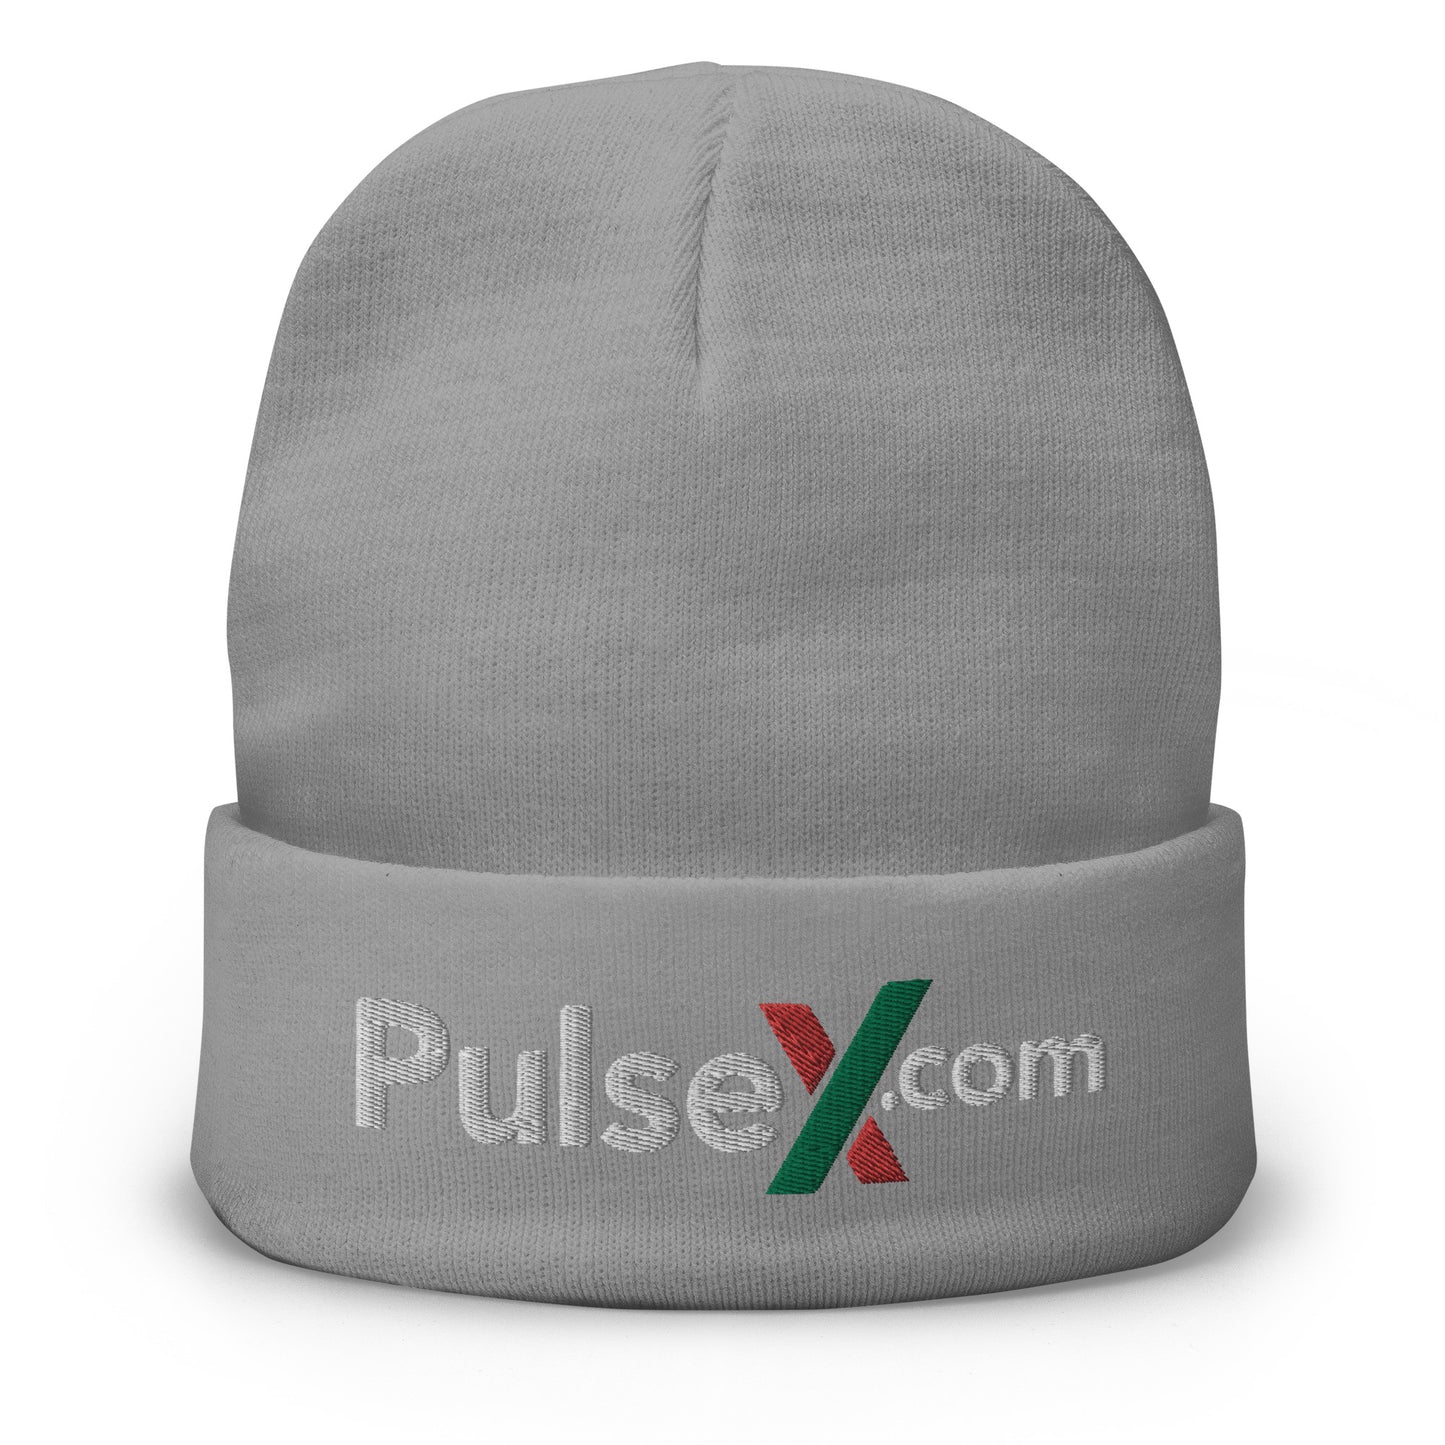 PulseX.com Beanie